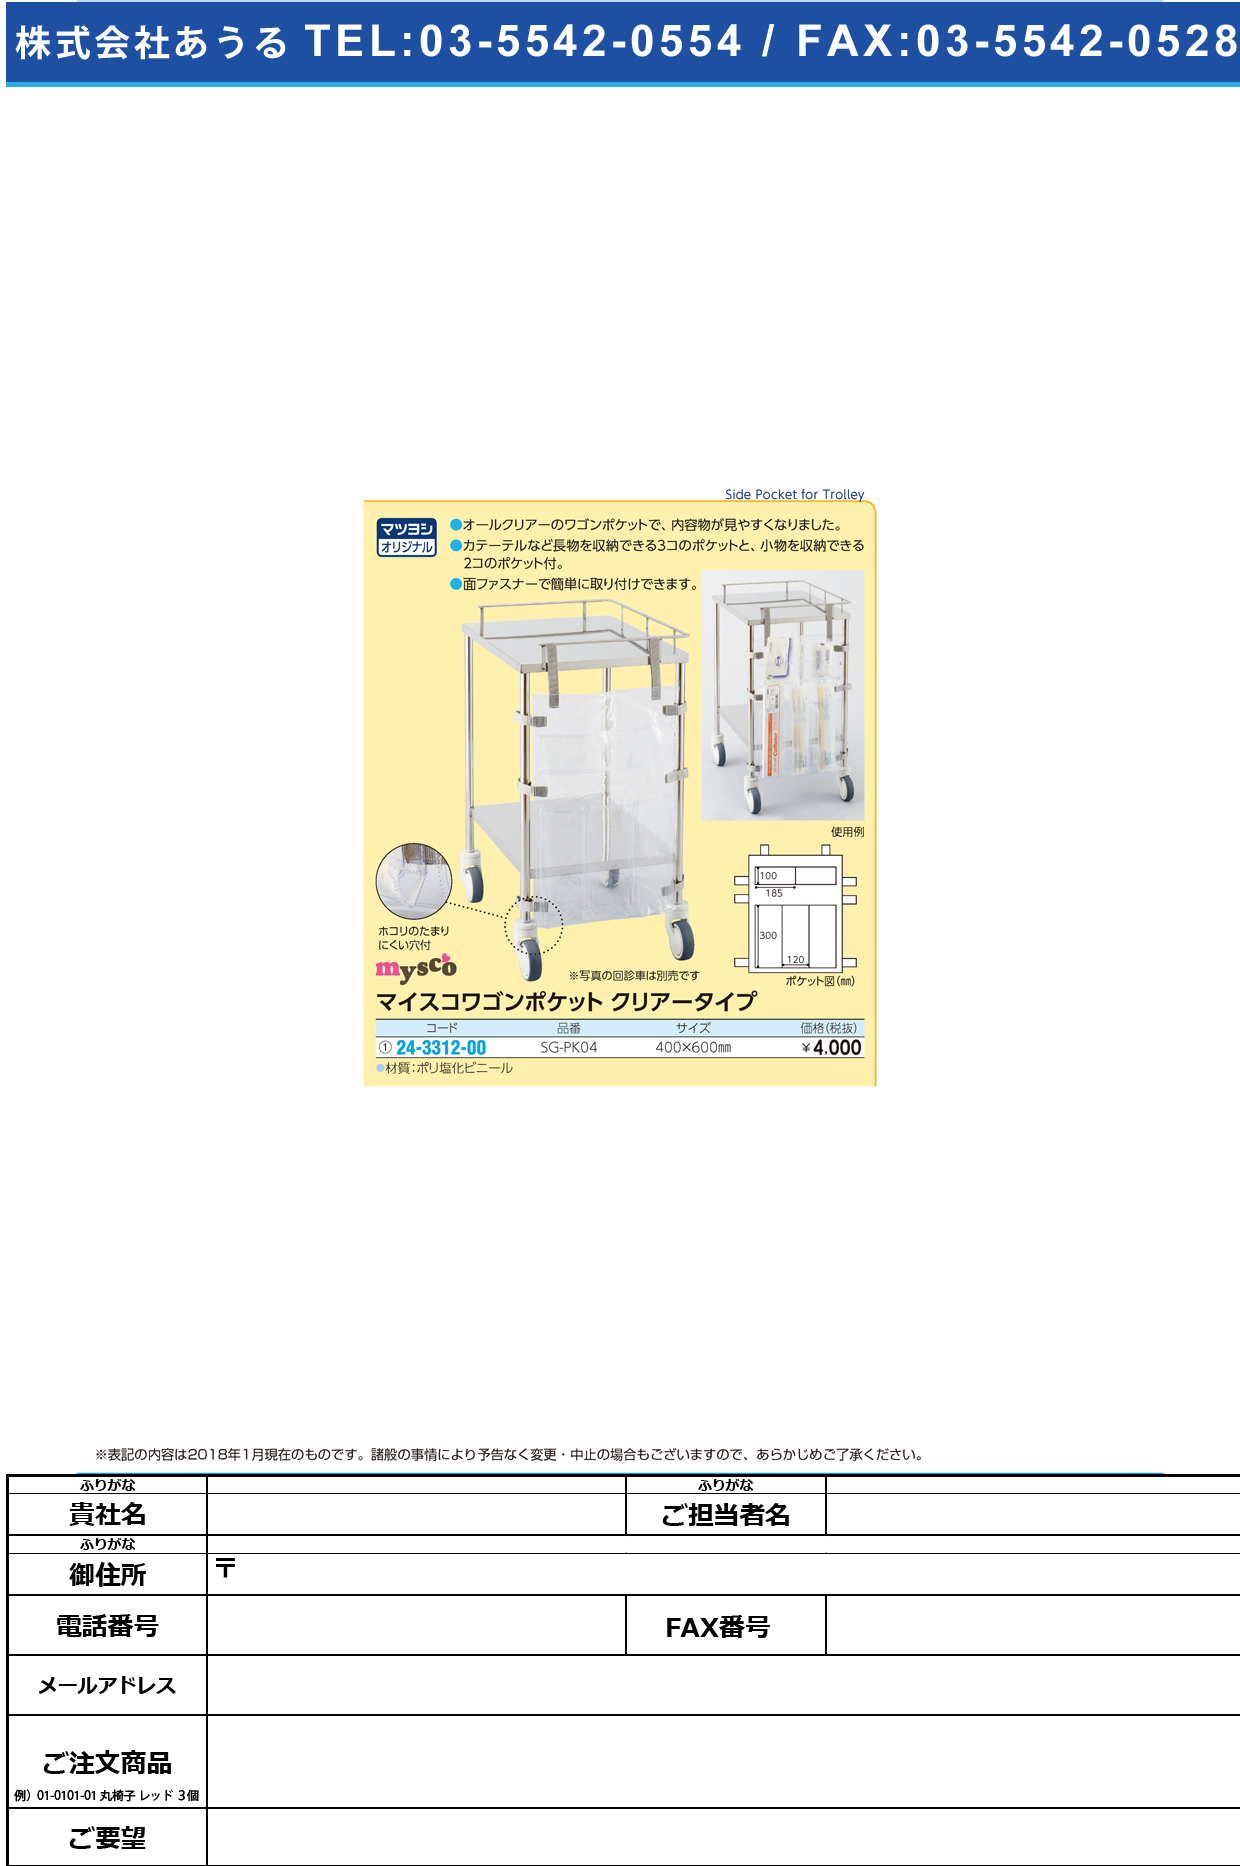 (24-3312-00)マイスコワゴンポケット SG-PK04 ﾏｲｽｺﾜｺﾞﾝﾎﾟｹｯﾄ(ｸﾘｱｰ)【1枚単位】【2018年カタログ商品】